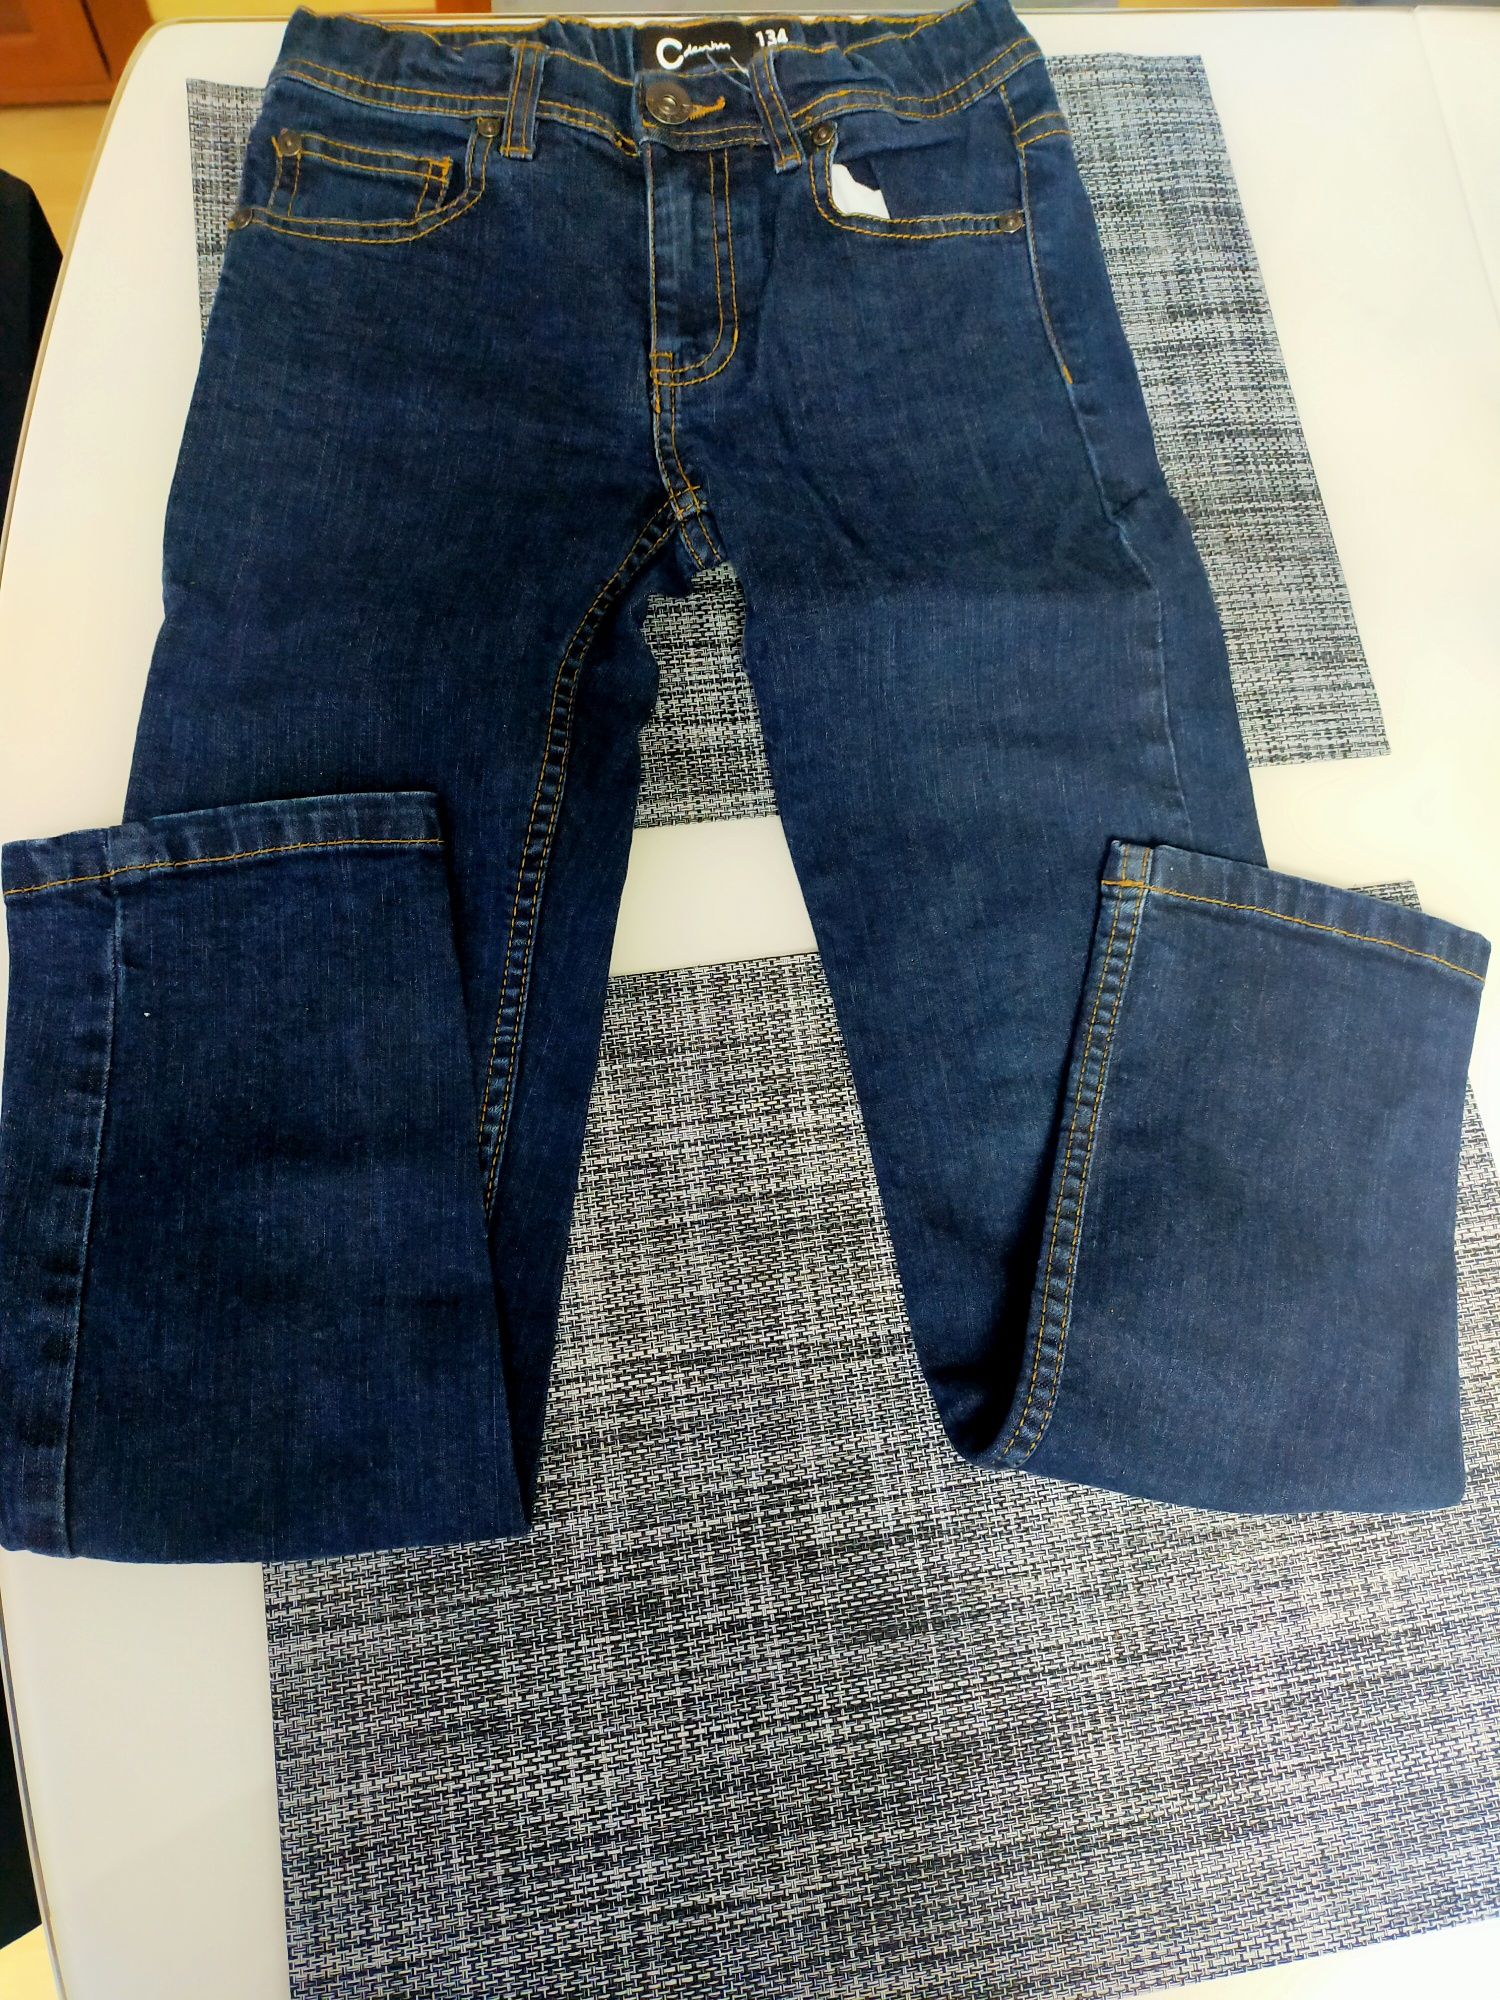 Spodnie jeansowe dla chłopca r. 134